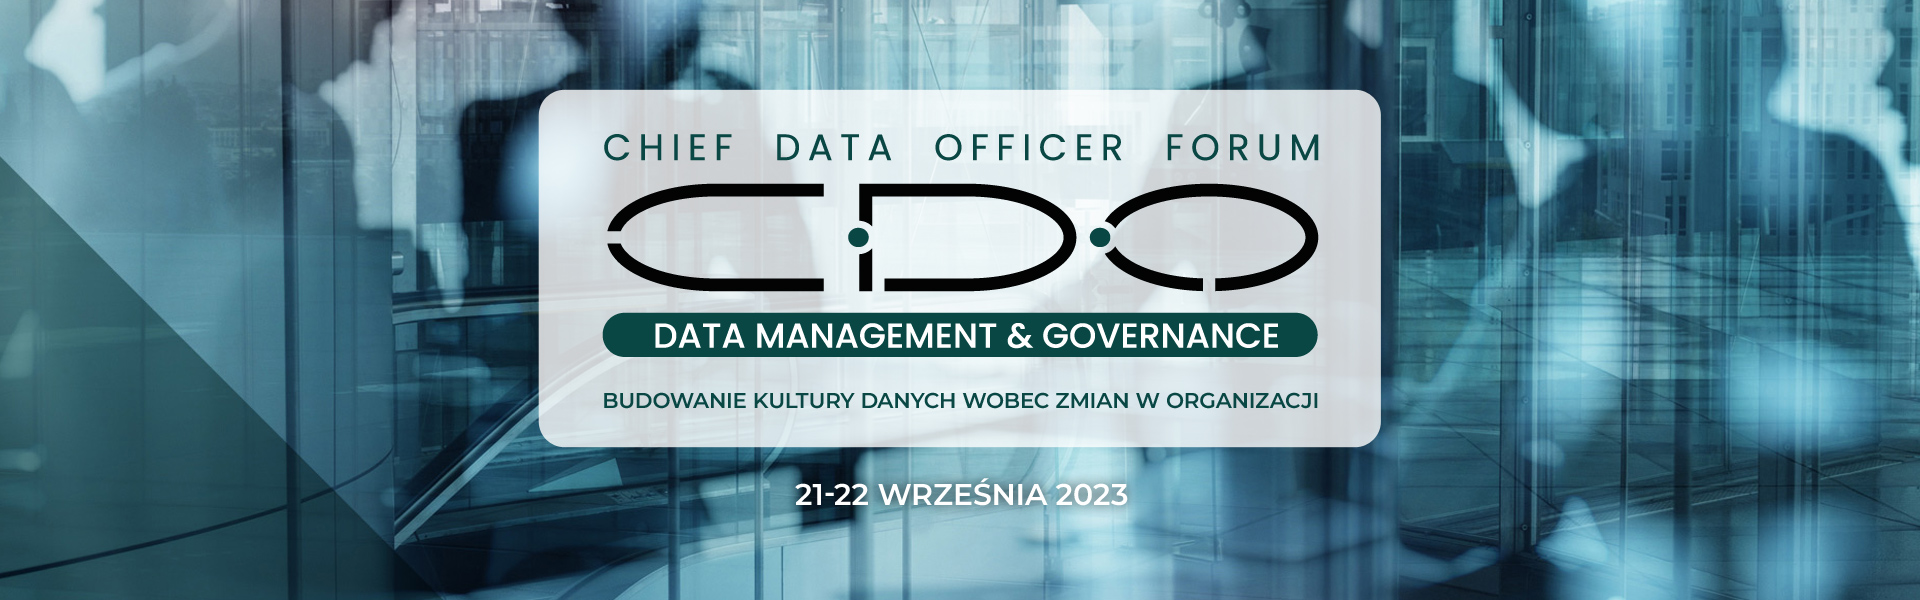 cdo-forum-data-management-governance